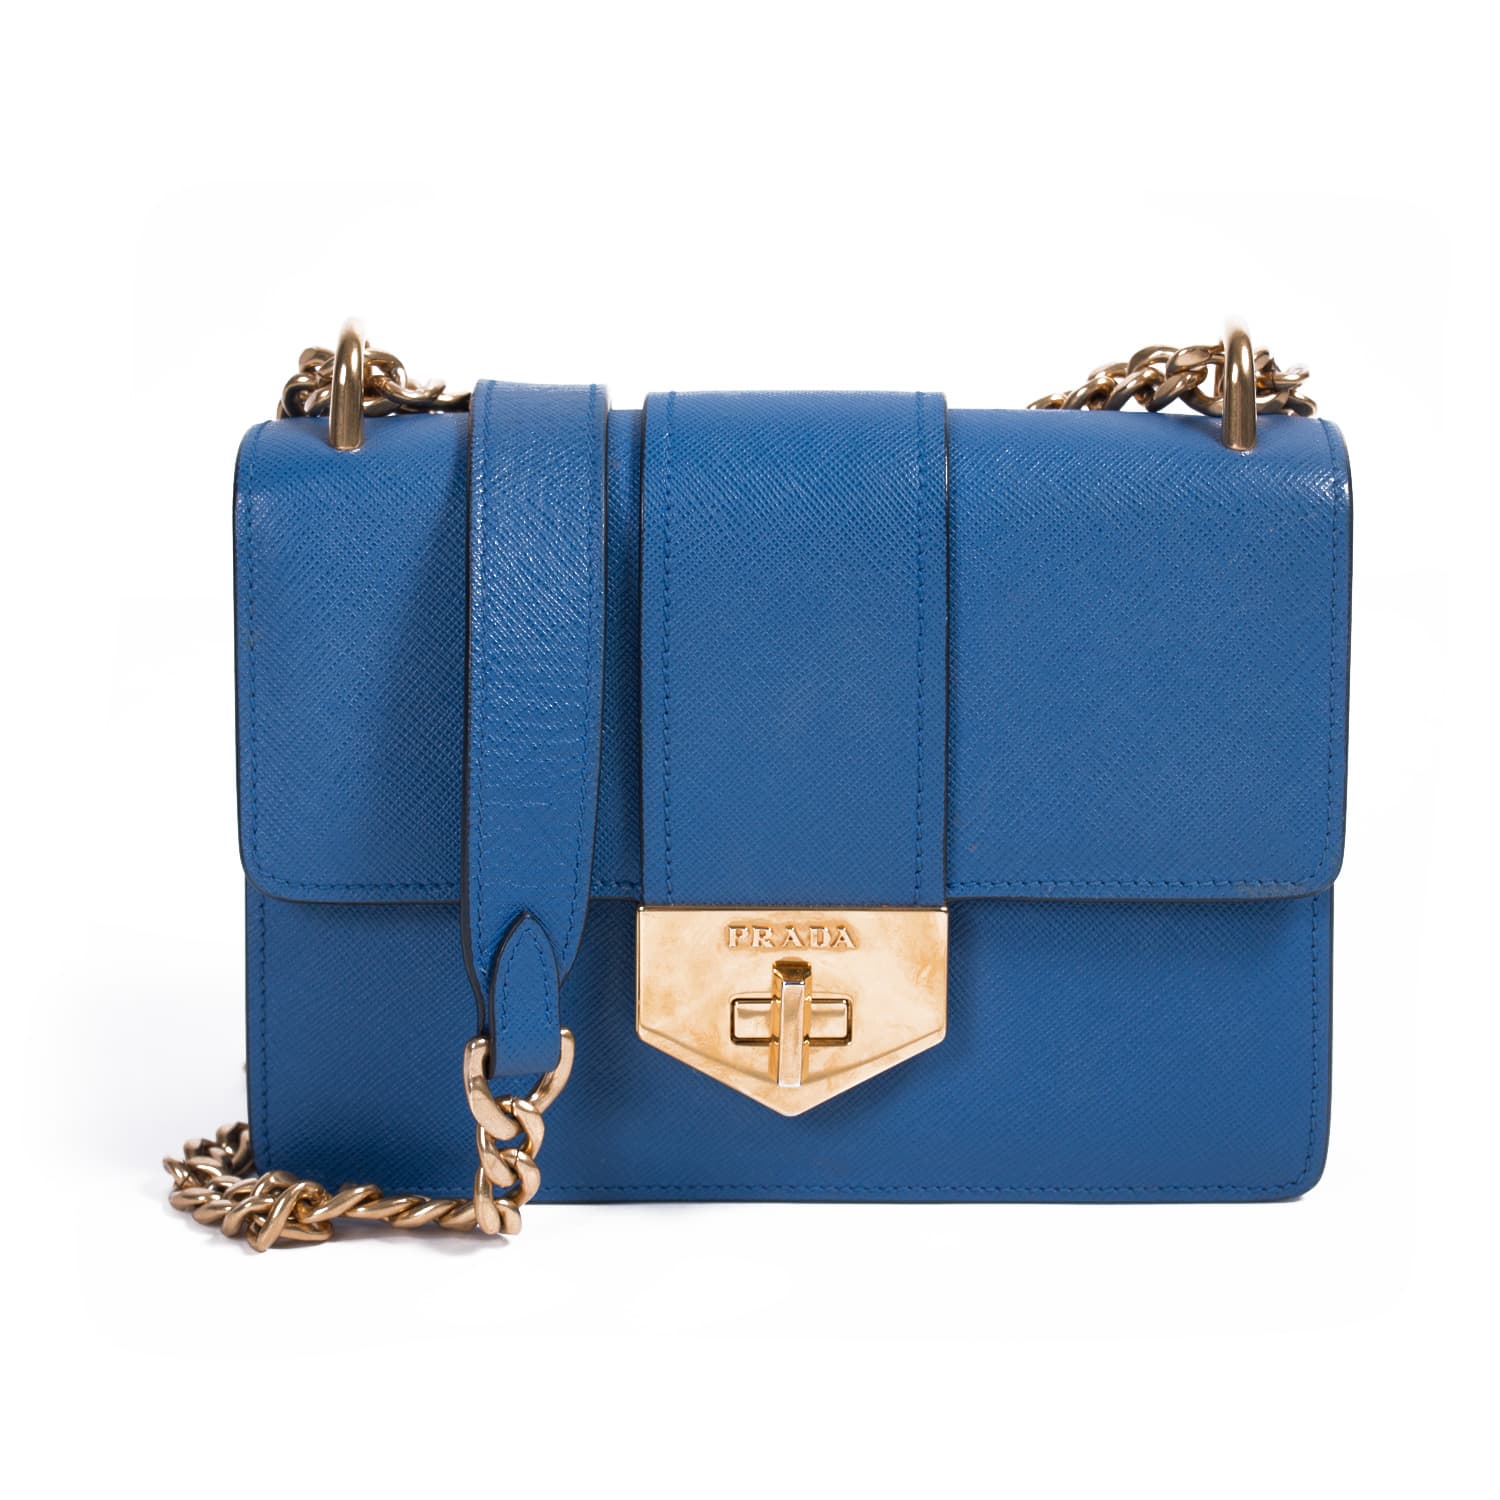 Prada Saffiano Lux Esplanade Shoulder Bag - Grey Shoulder Bags, Handbags -  PRA879058